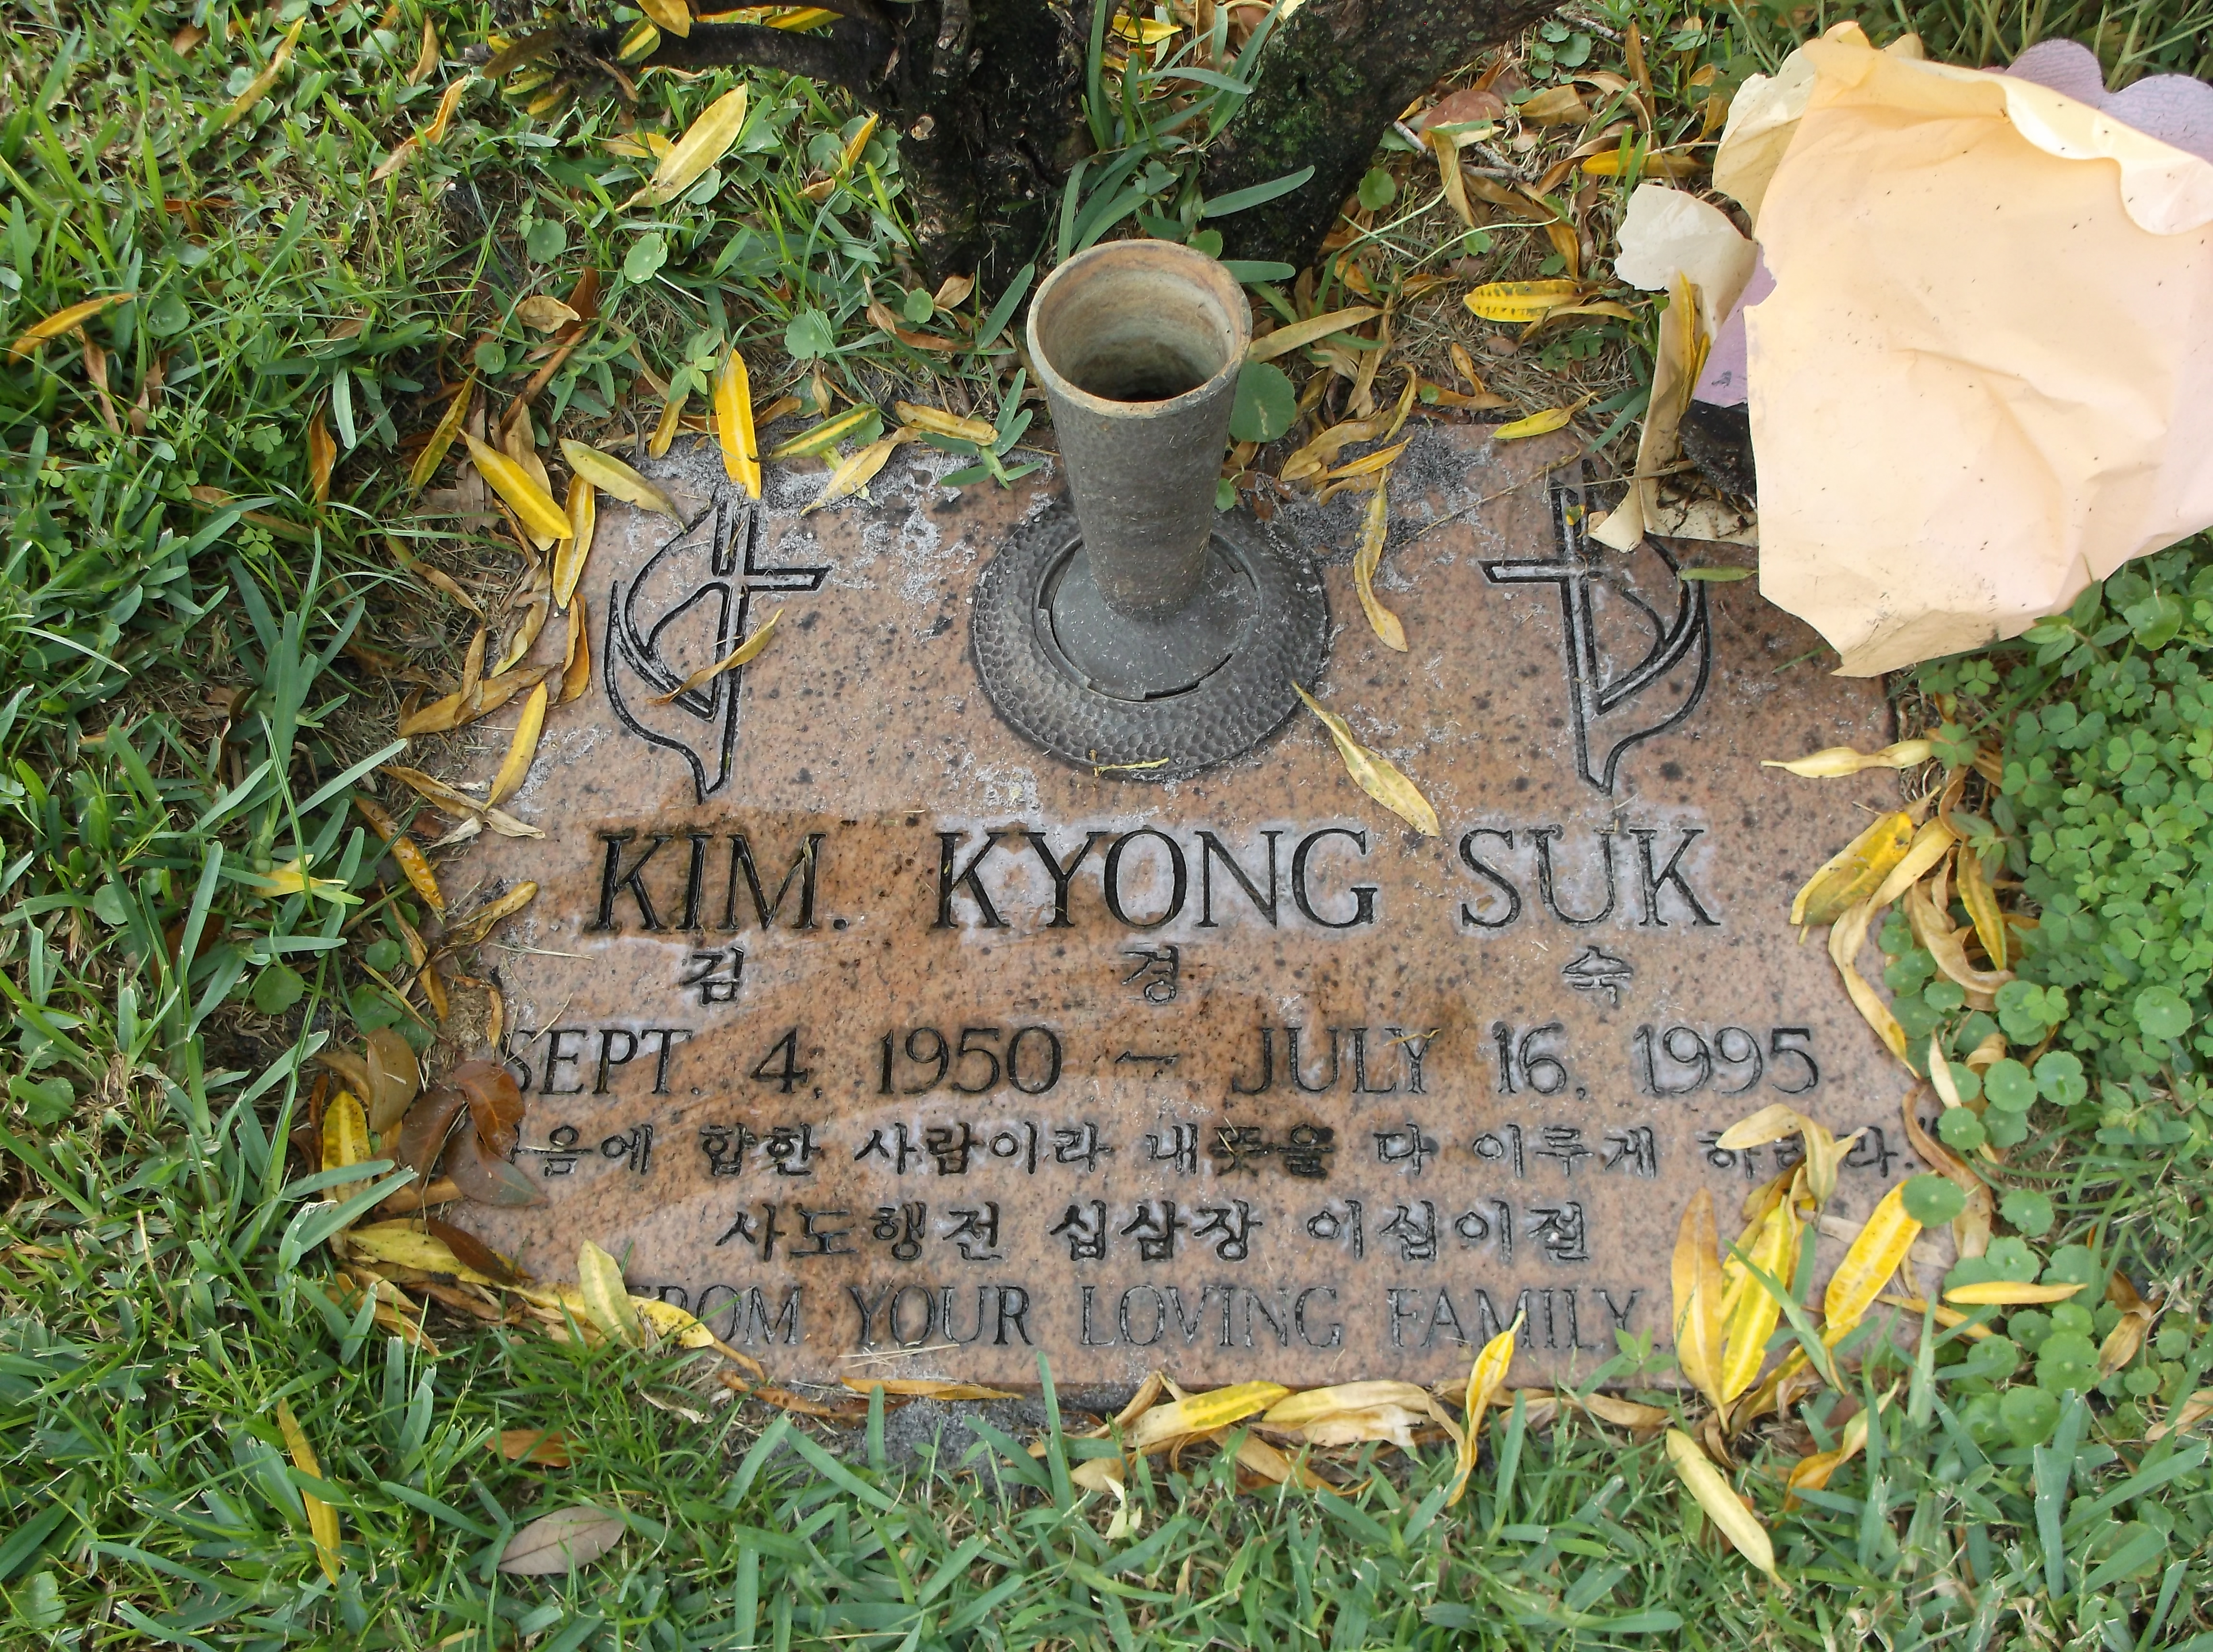 Kim Kyong Suk